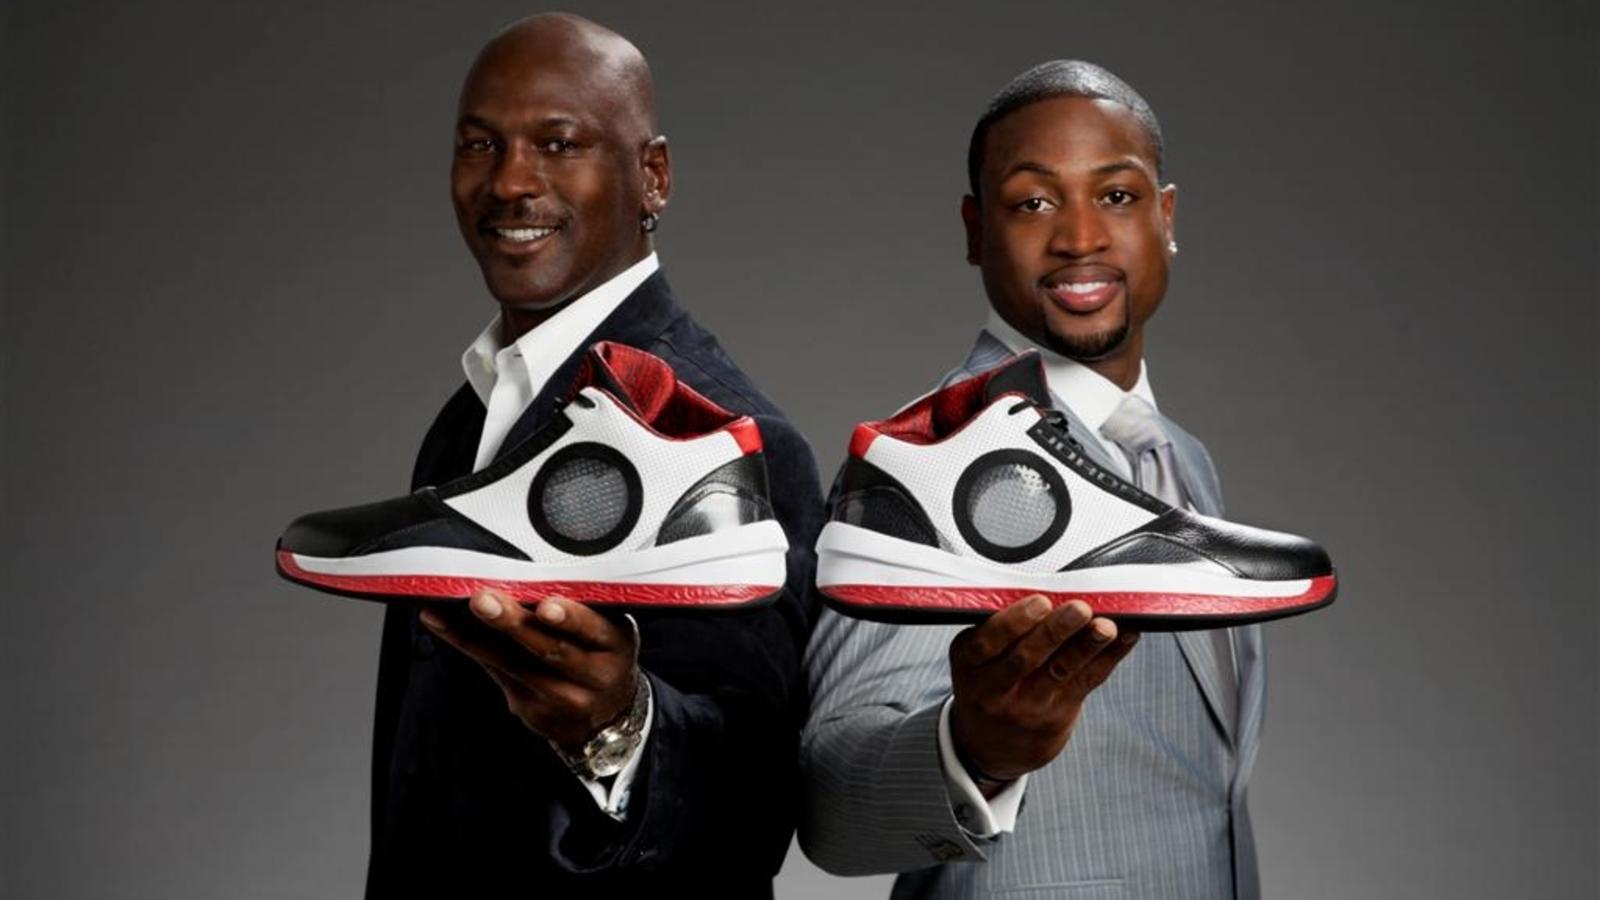 Nike and Jordan Brand